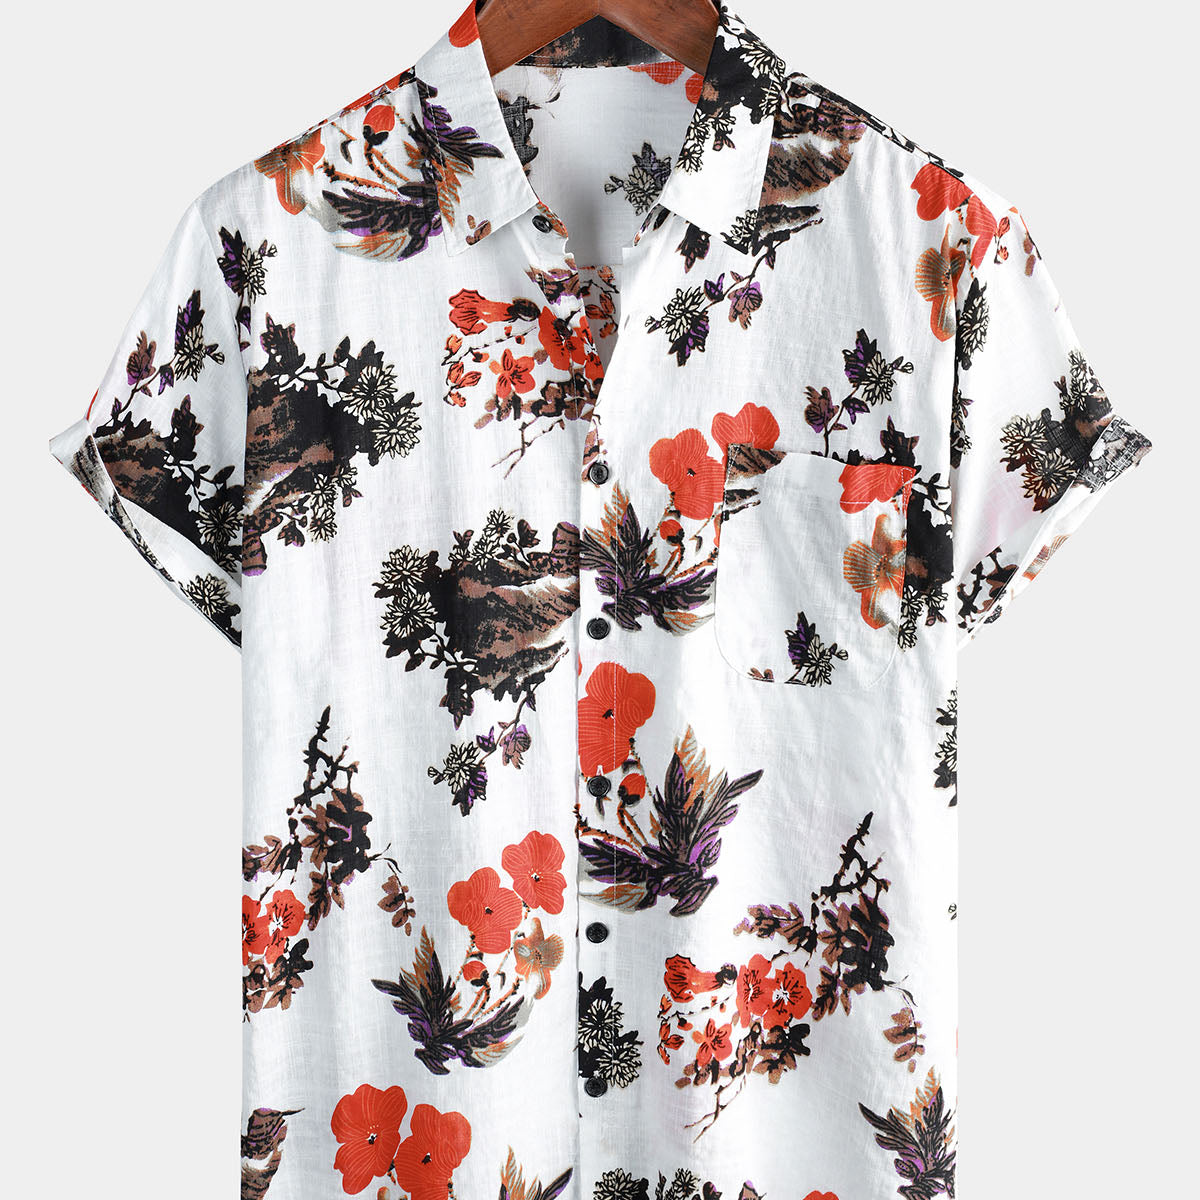 Men's Cotton Pocket Casual Floral Print Button Beach Summer Short Sleeve Shirt